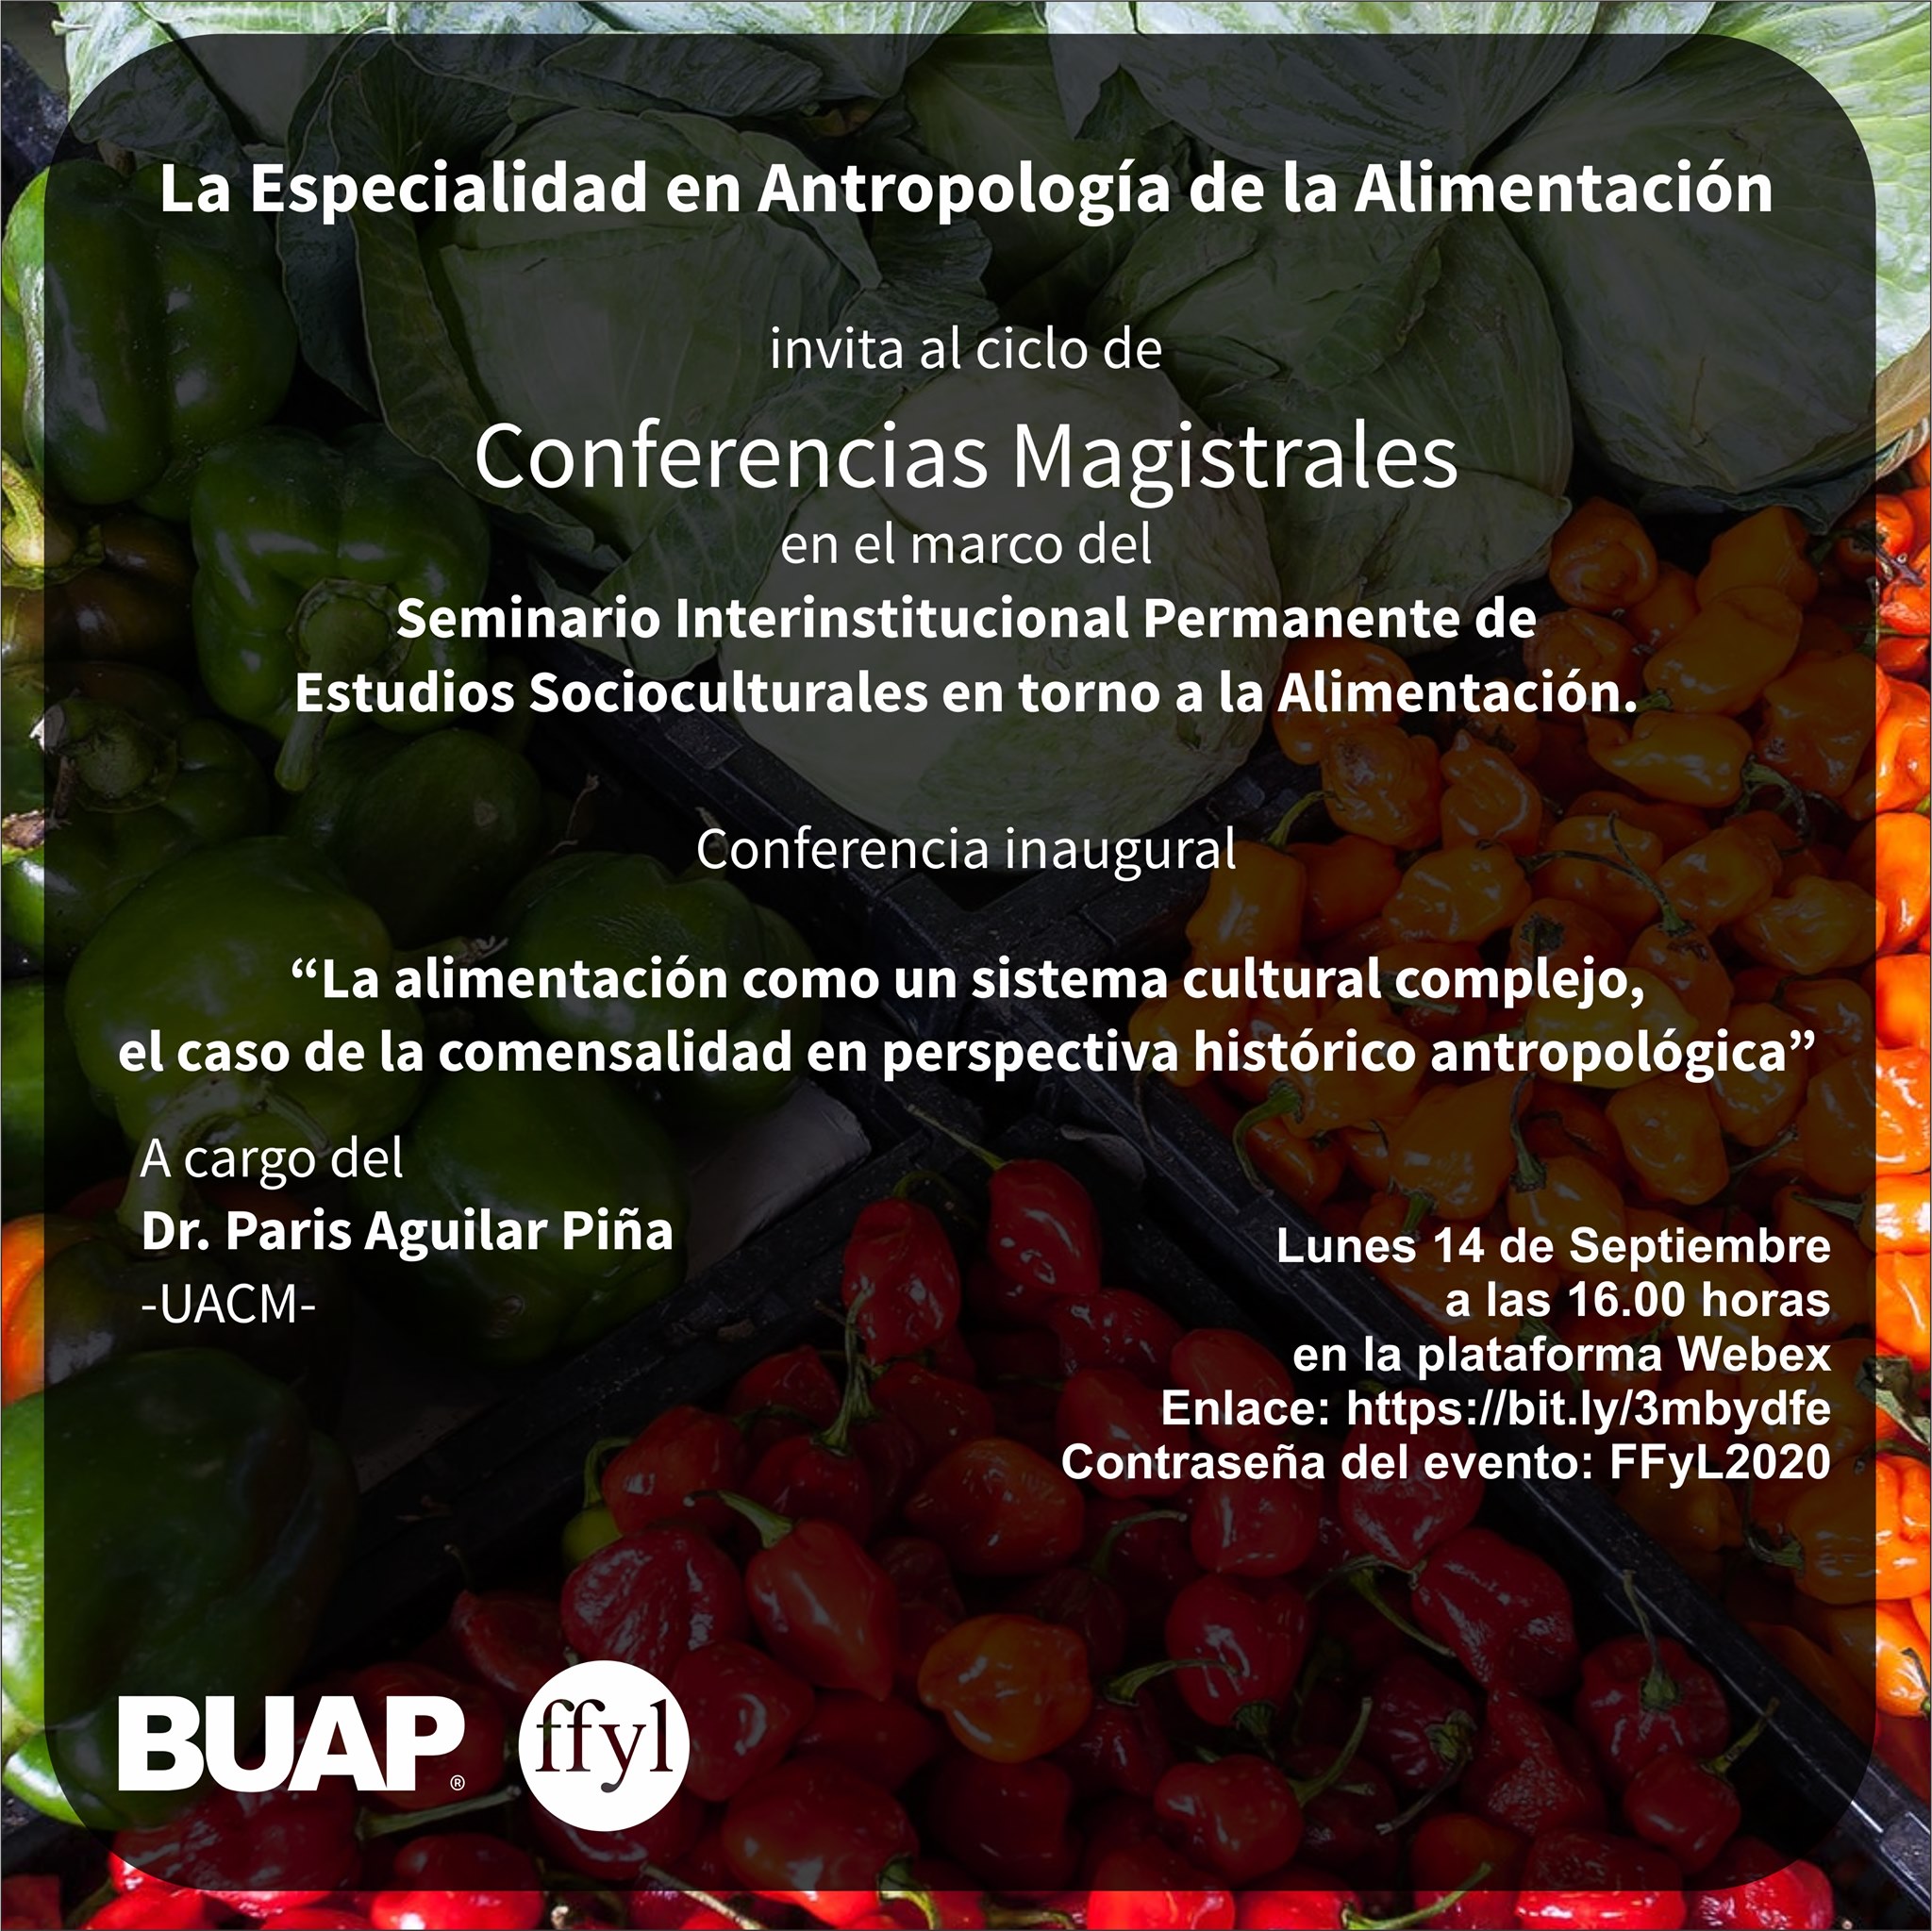 Conferencia #EnVivo: “La alimentación como un sistema cultural complejo, el caso de la comensalidad en perspectiva histórico antropológica”